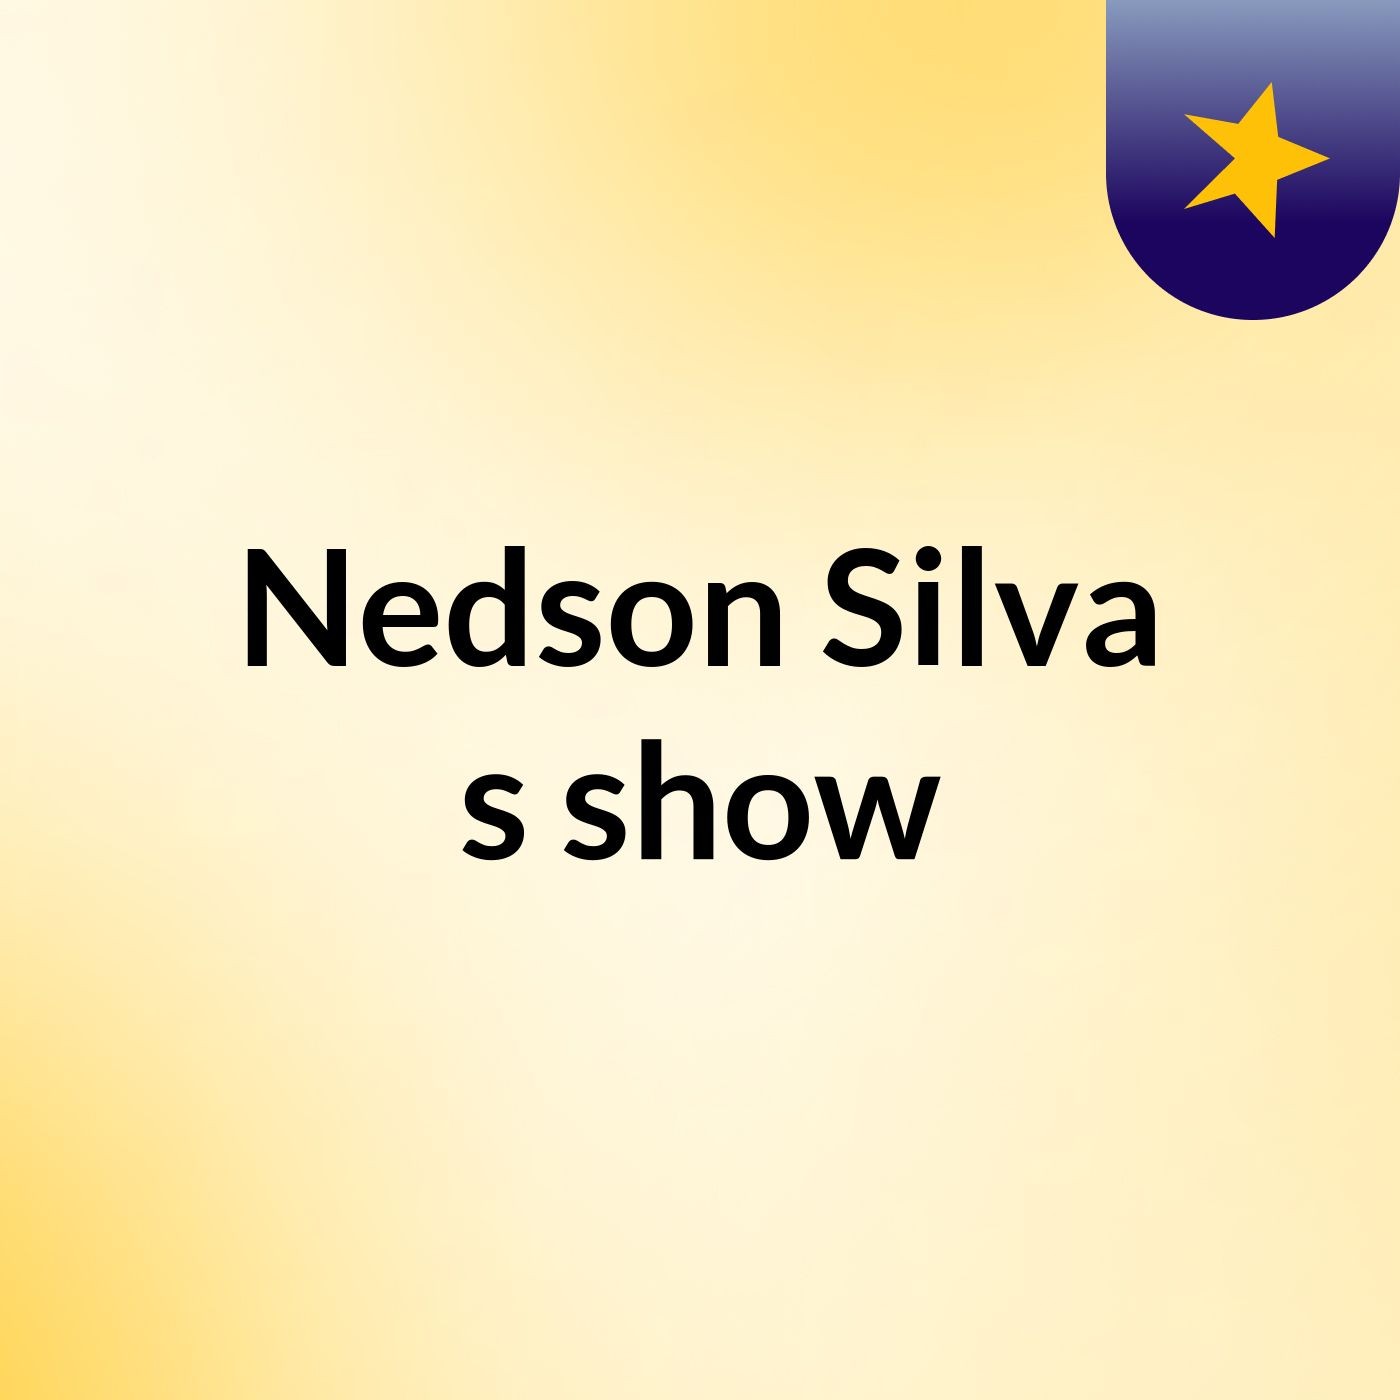 Nedson Silva's show